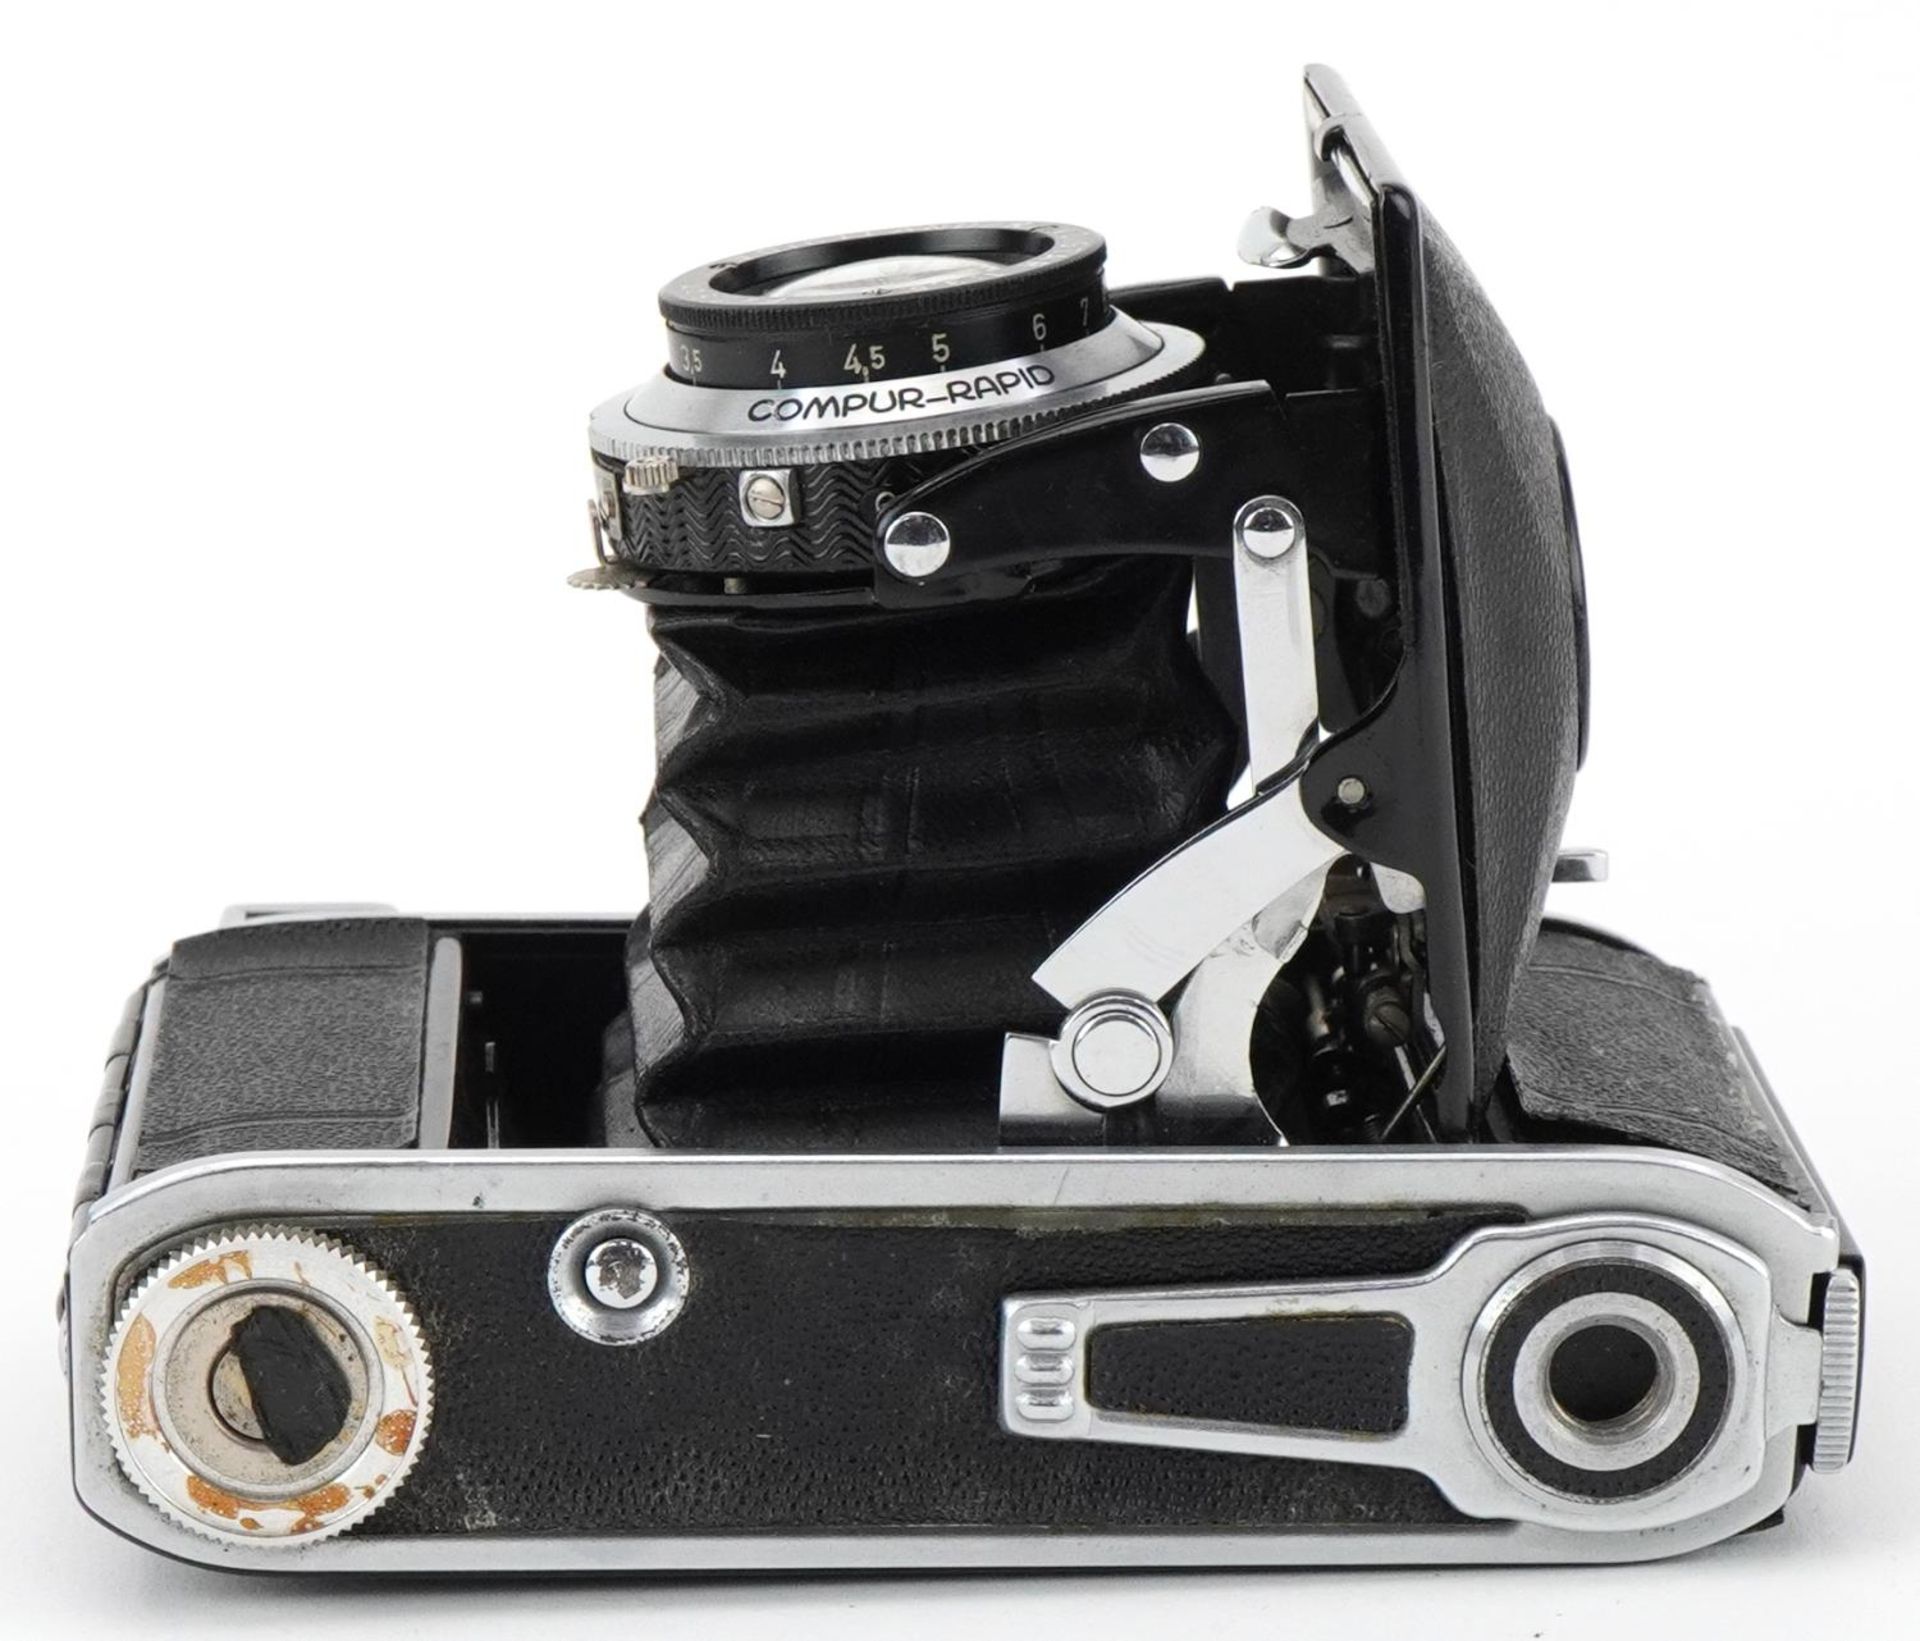 Vintage Voigtlander Voigtar camera with brown leather case - Image 4 of 4